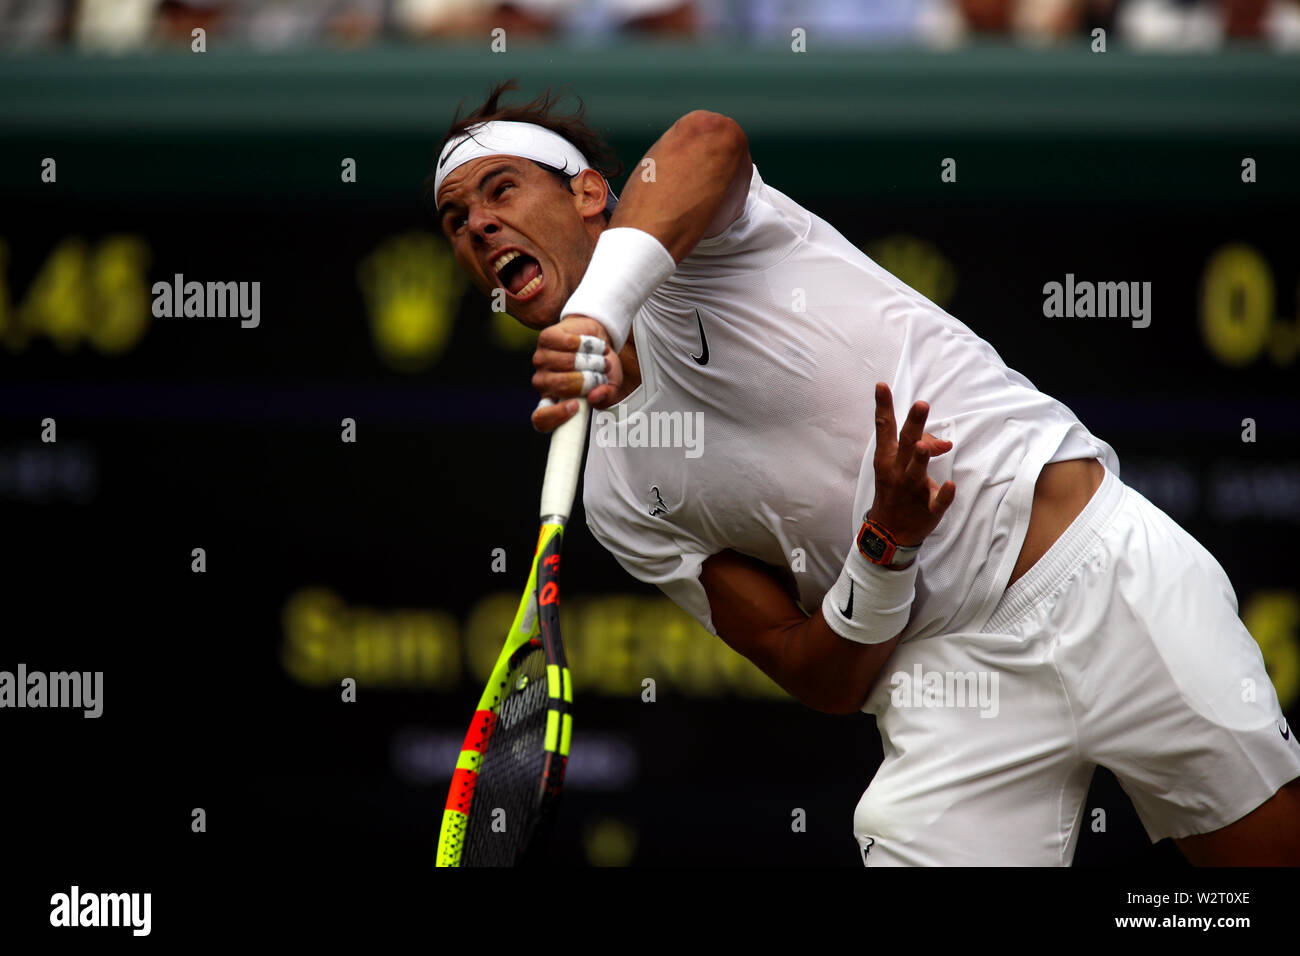 Wimbledon, UK. 10. Juli 2019. Rafael Nadal während sein Viertelfinale gegen Sam Querrey aus den USA in Wimbledon heute dienen. Nadal gewann in den geraden Sätzen im Halbfinale, wo er Roger Federer Credit: Adam Stoltman/Alamy Live News Gesicht voraus Stockfoto